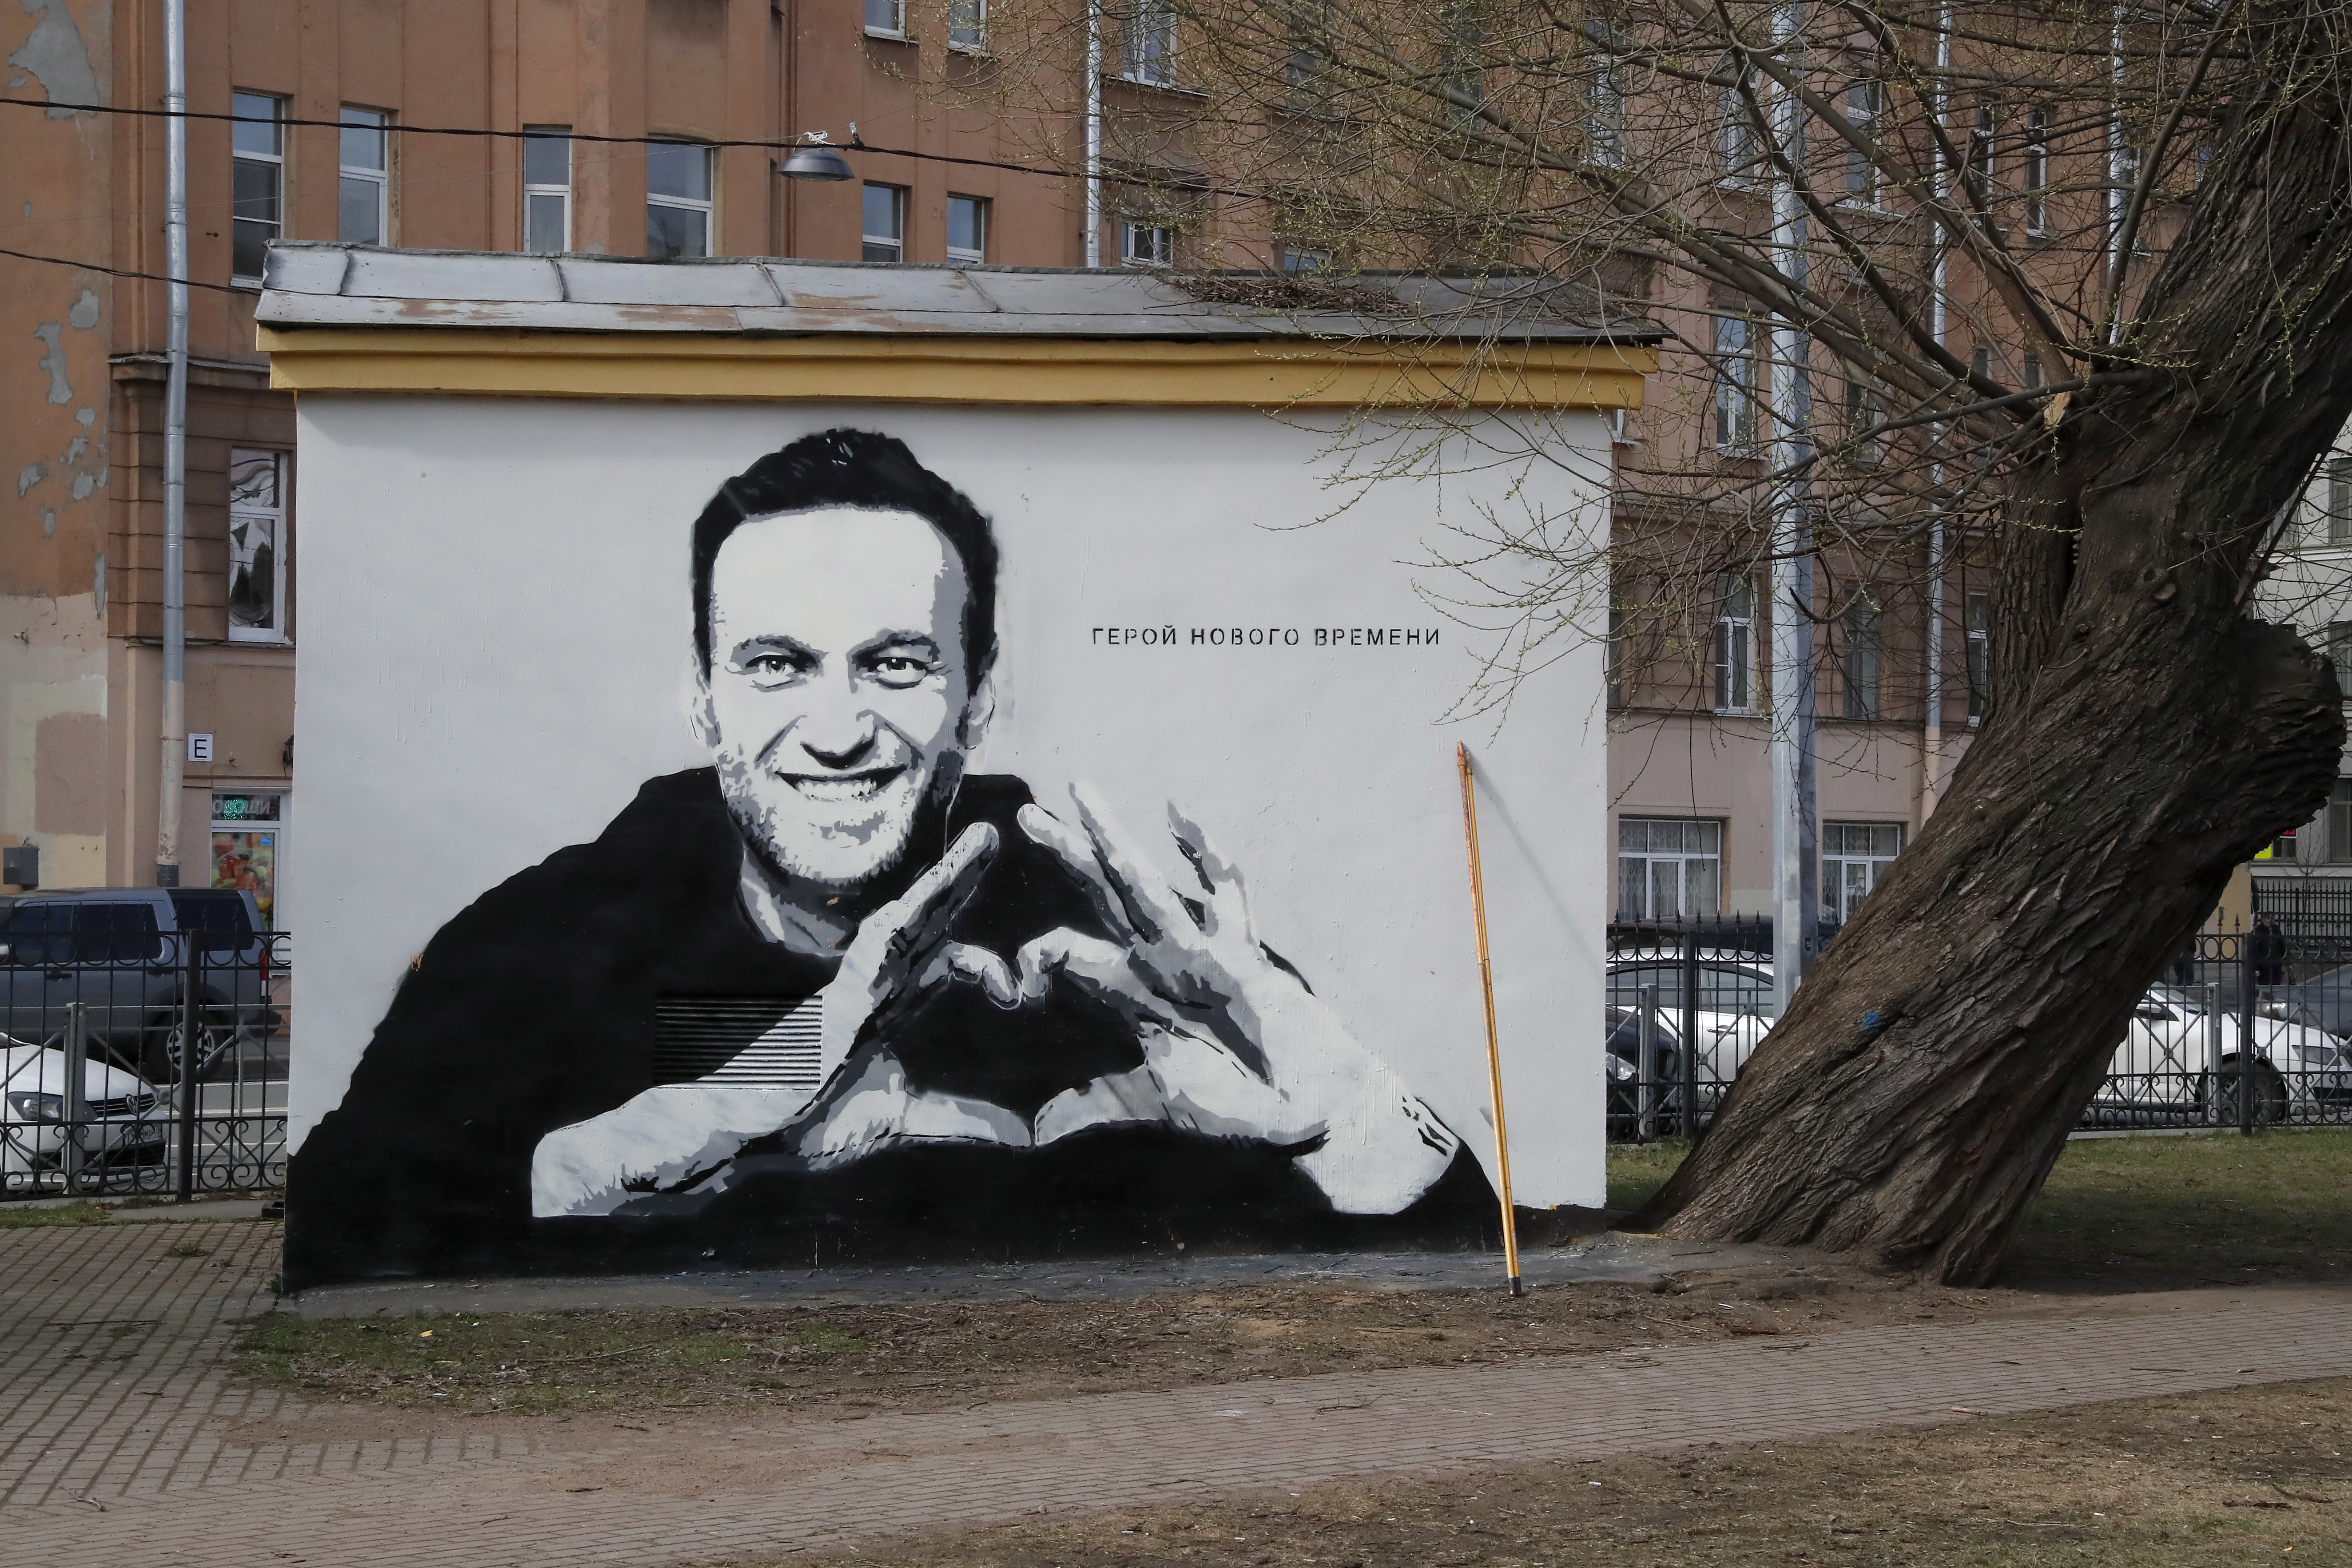 Grafiti con la imagen del líder opositor ruso, Alexei Navalni, en una calle de St. Petersburg, Rusia. EFE/EPA/ANATOLY MALTSEV/Archivo
